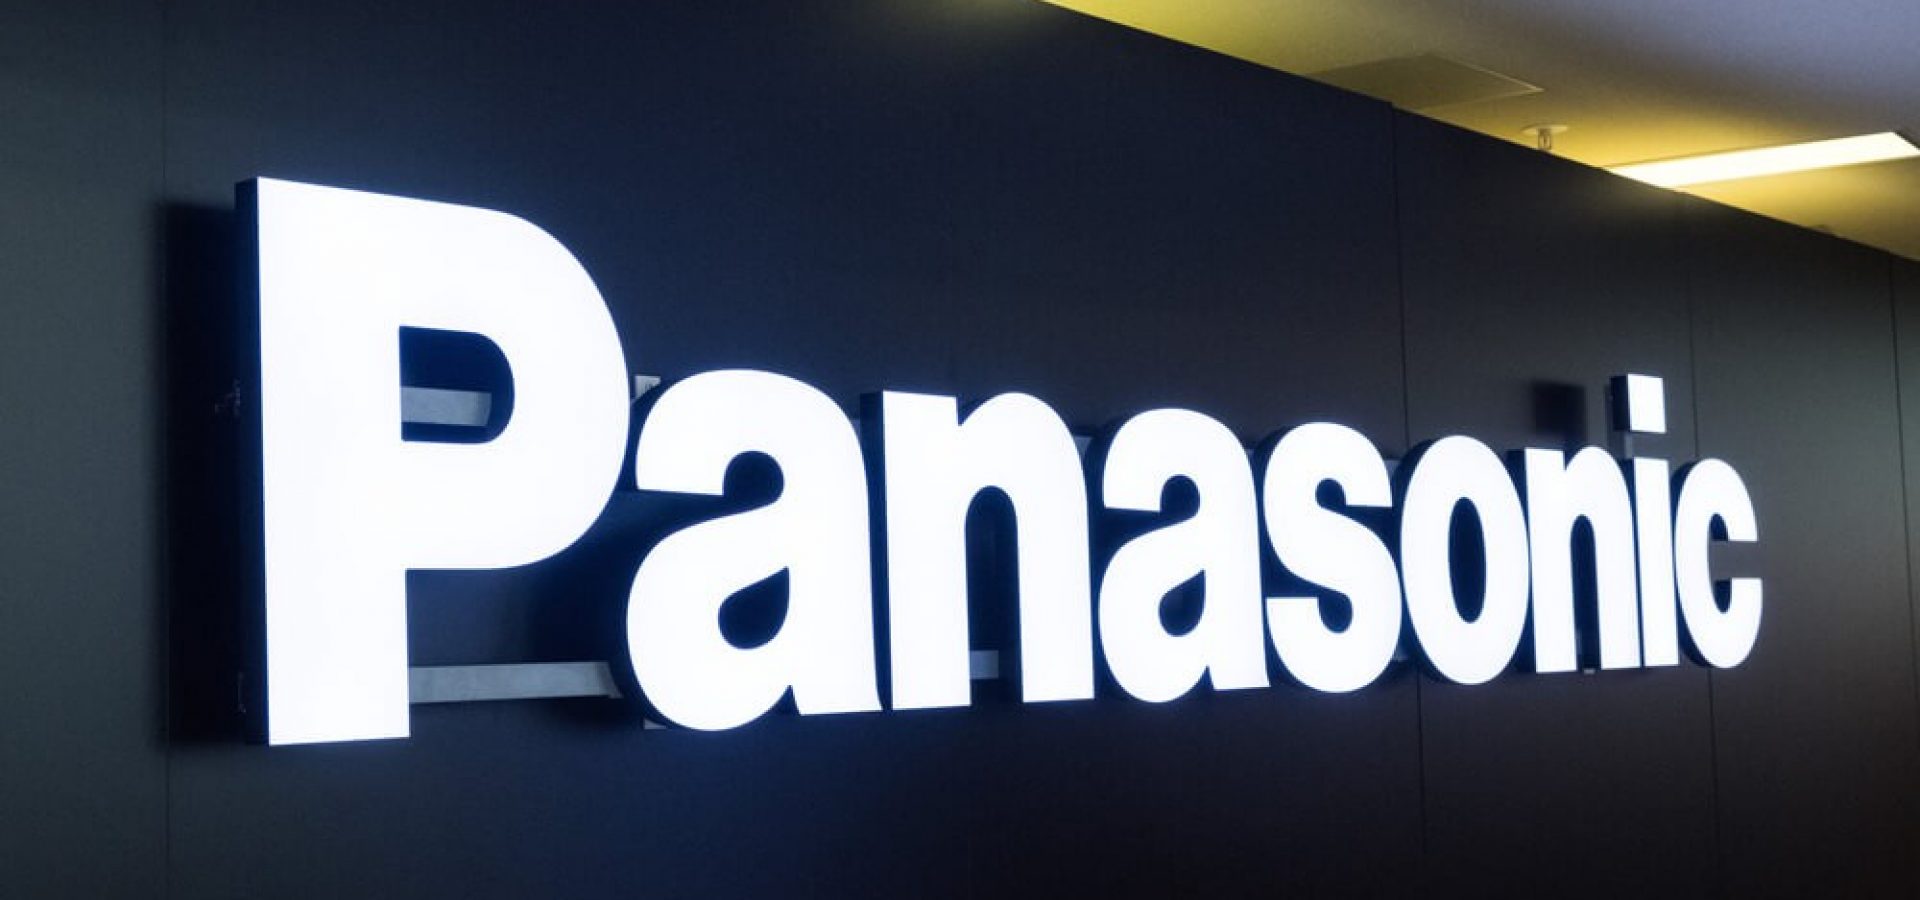 Panasonic banner photo.